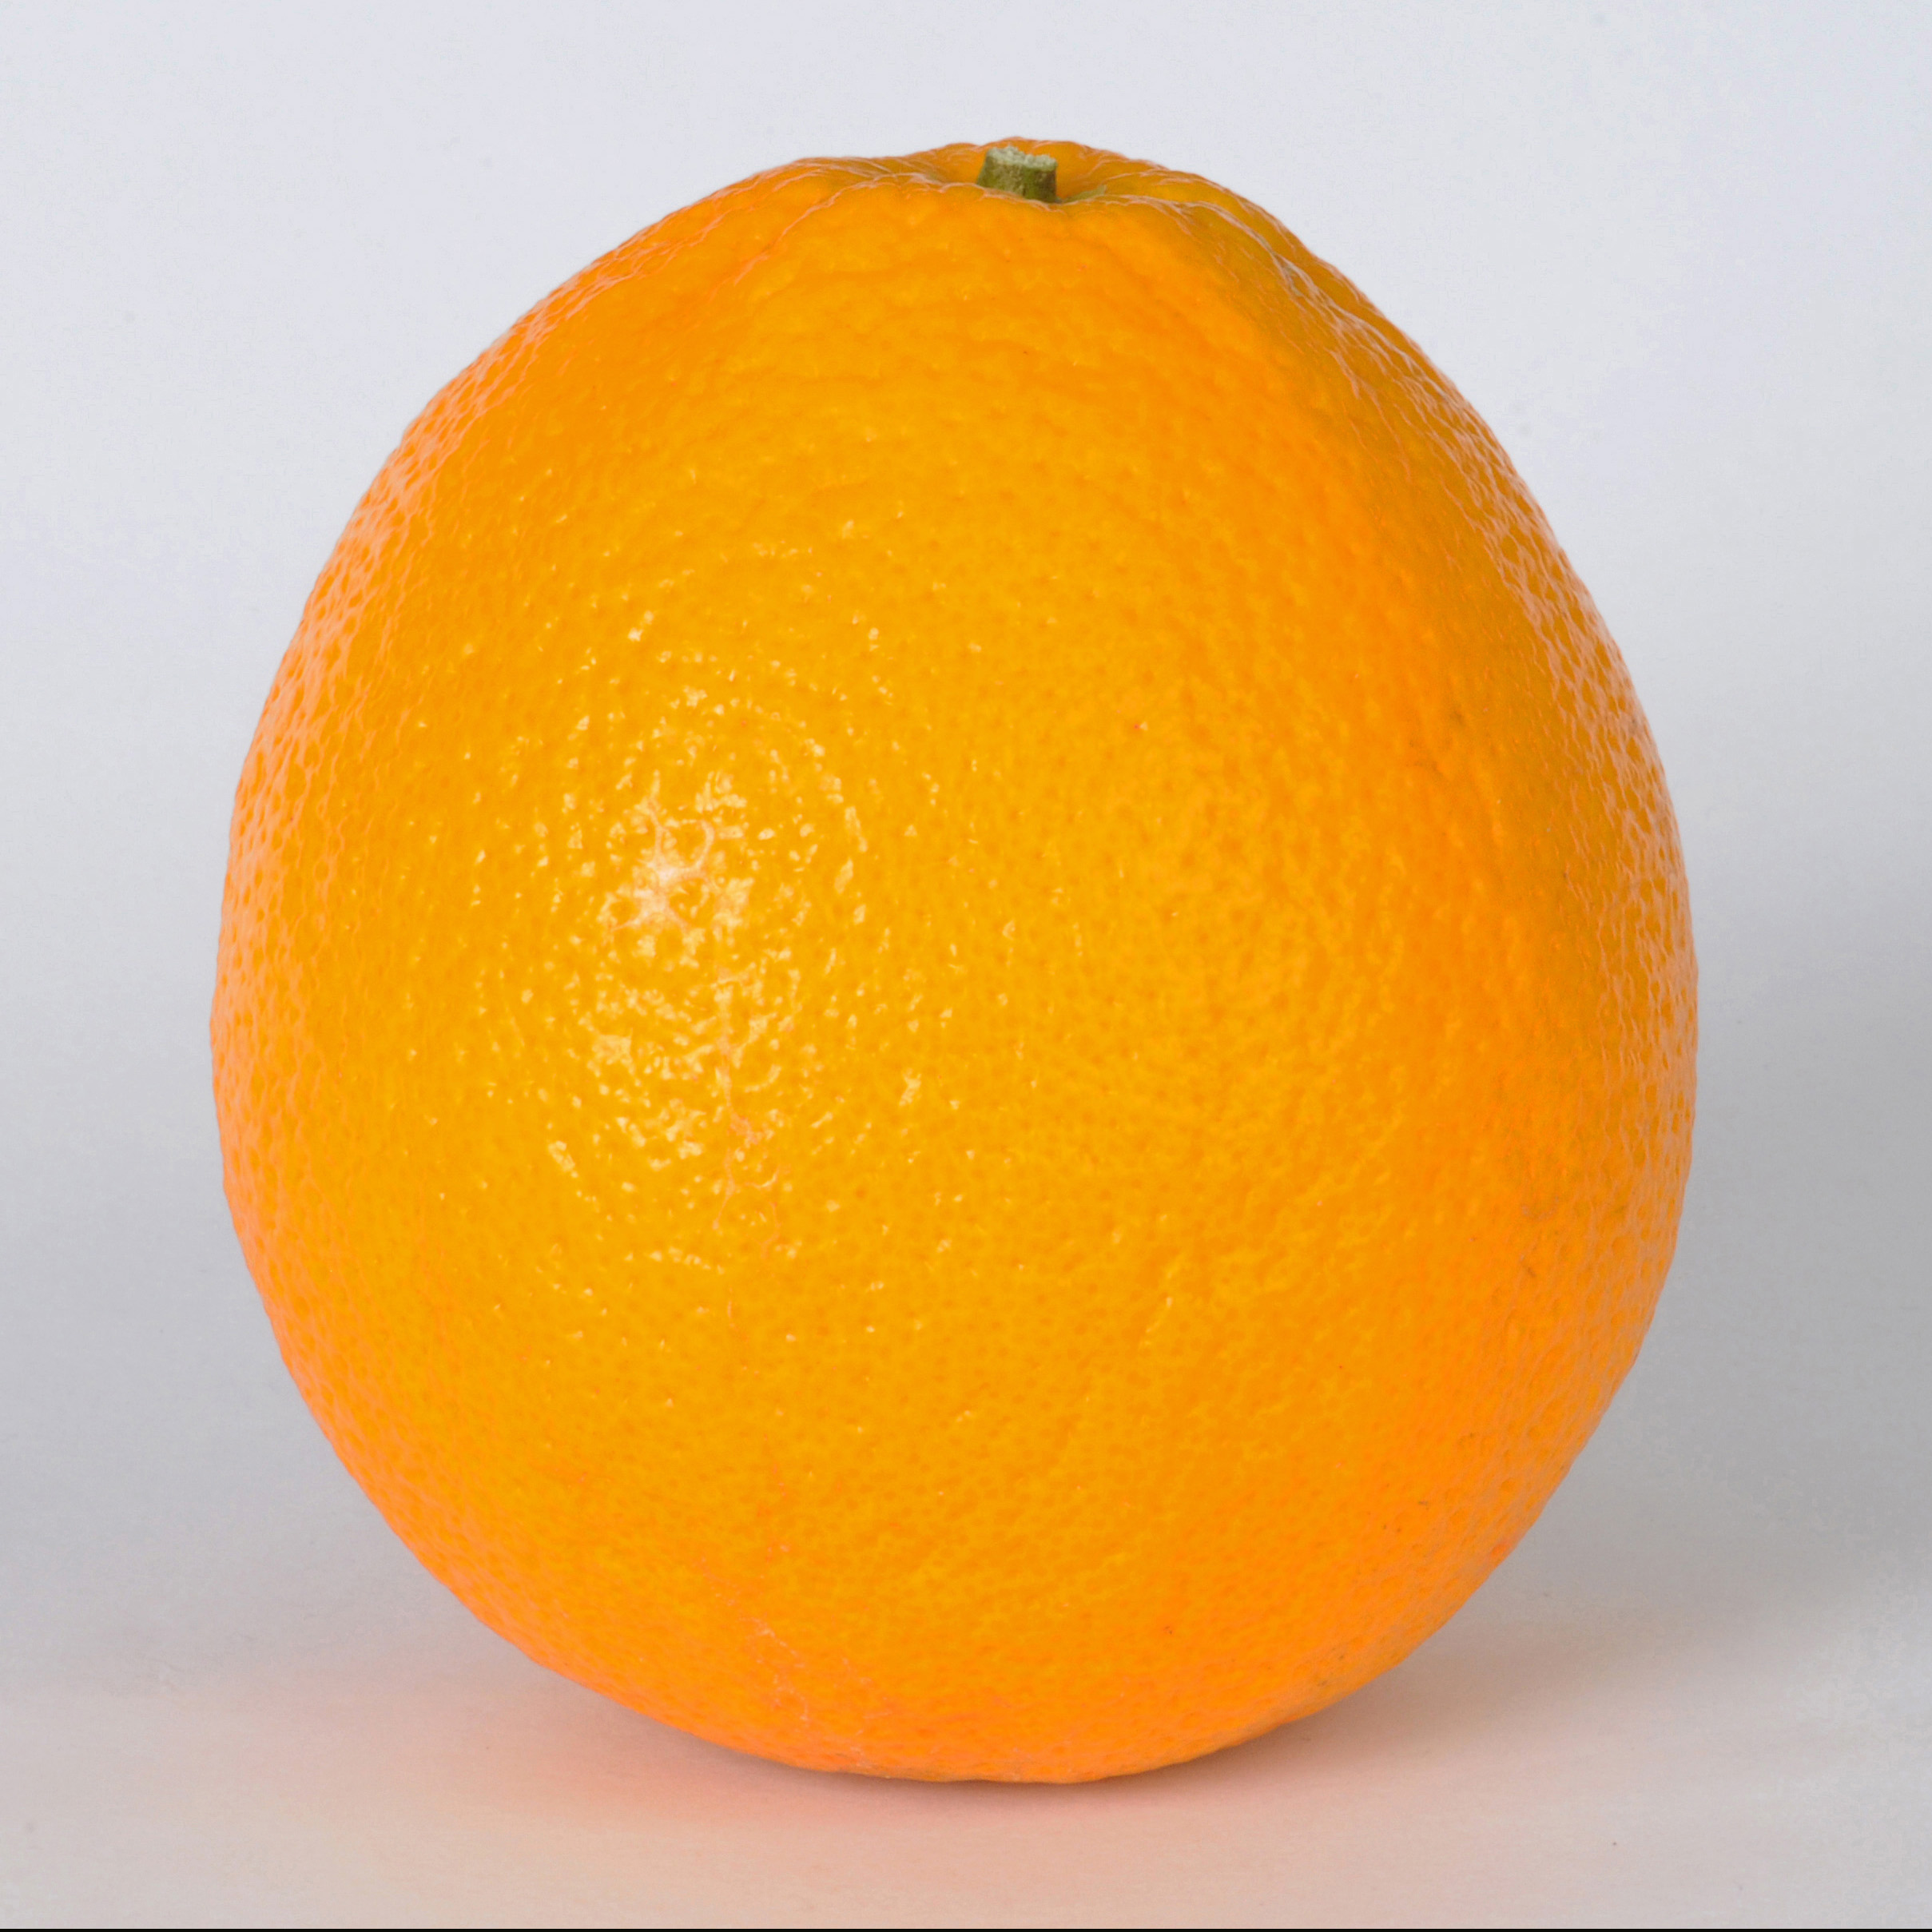 Orange Fruit picture image - Free stock photo - Public Domain photo